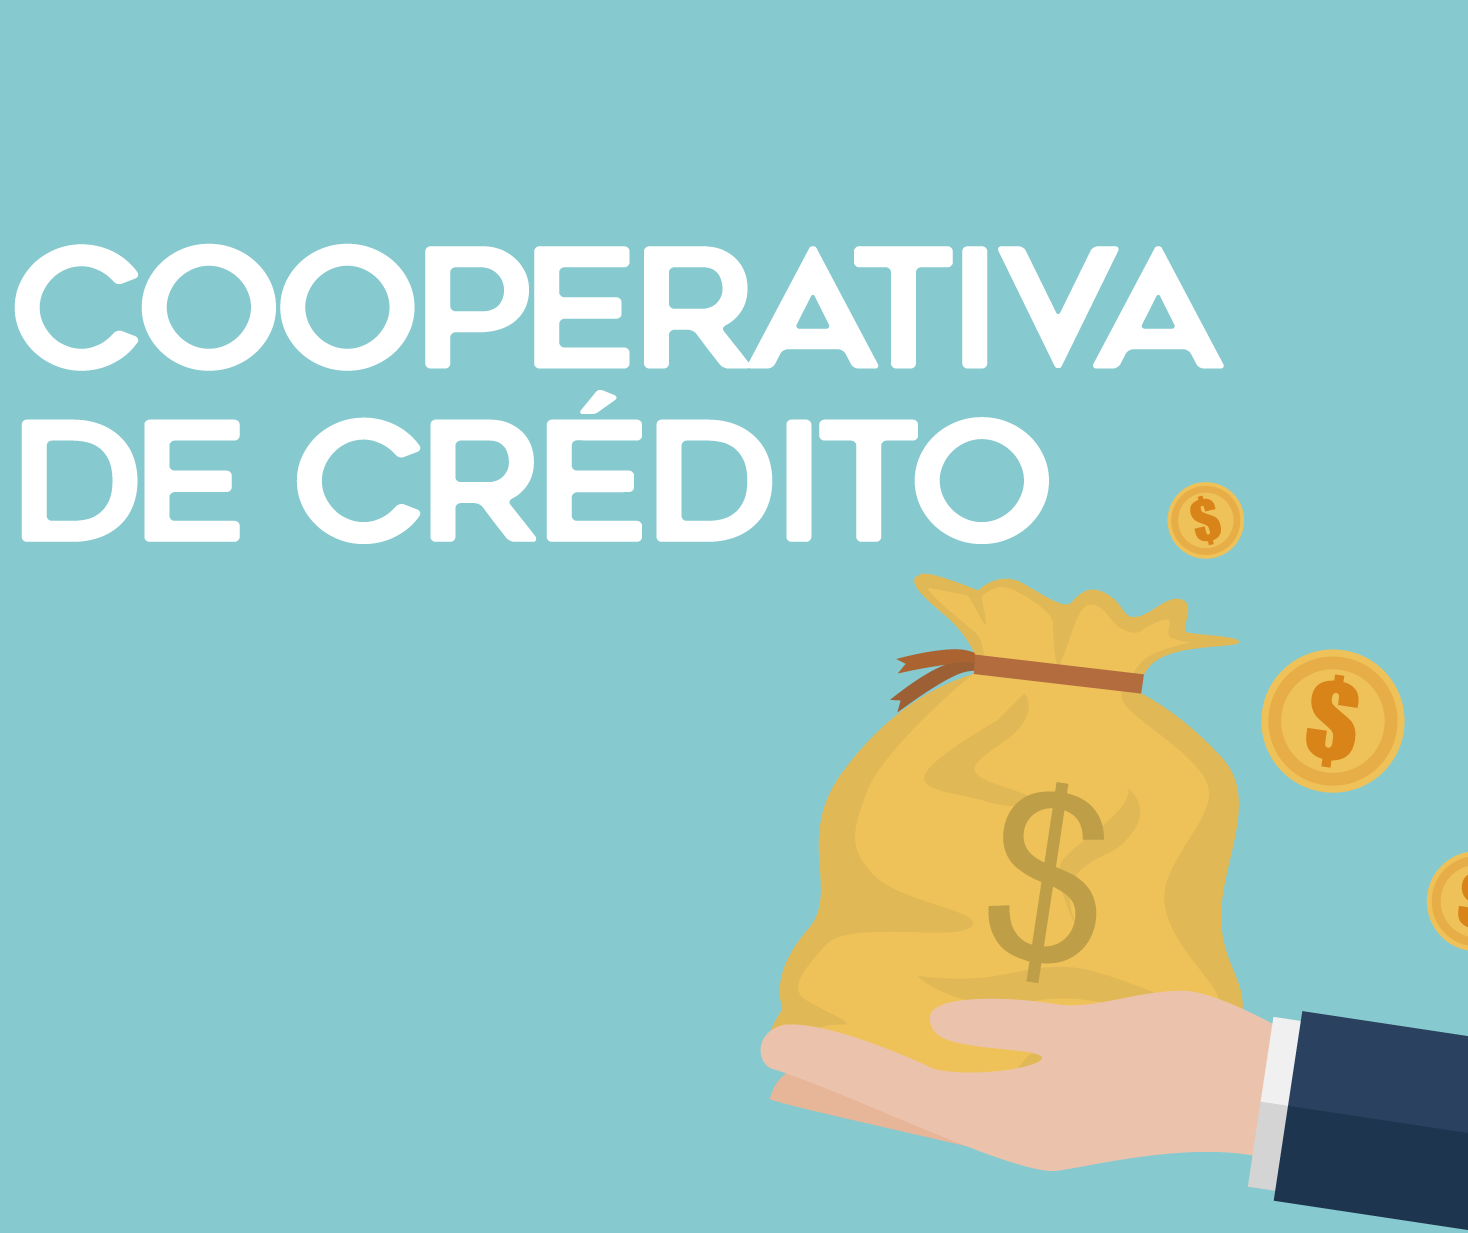 Cooperativas de crédito: em vez de clientes, há cooperados